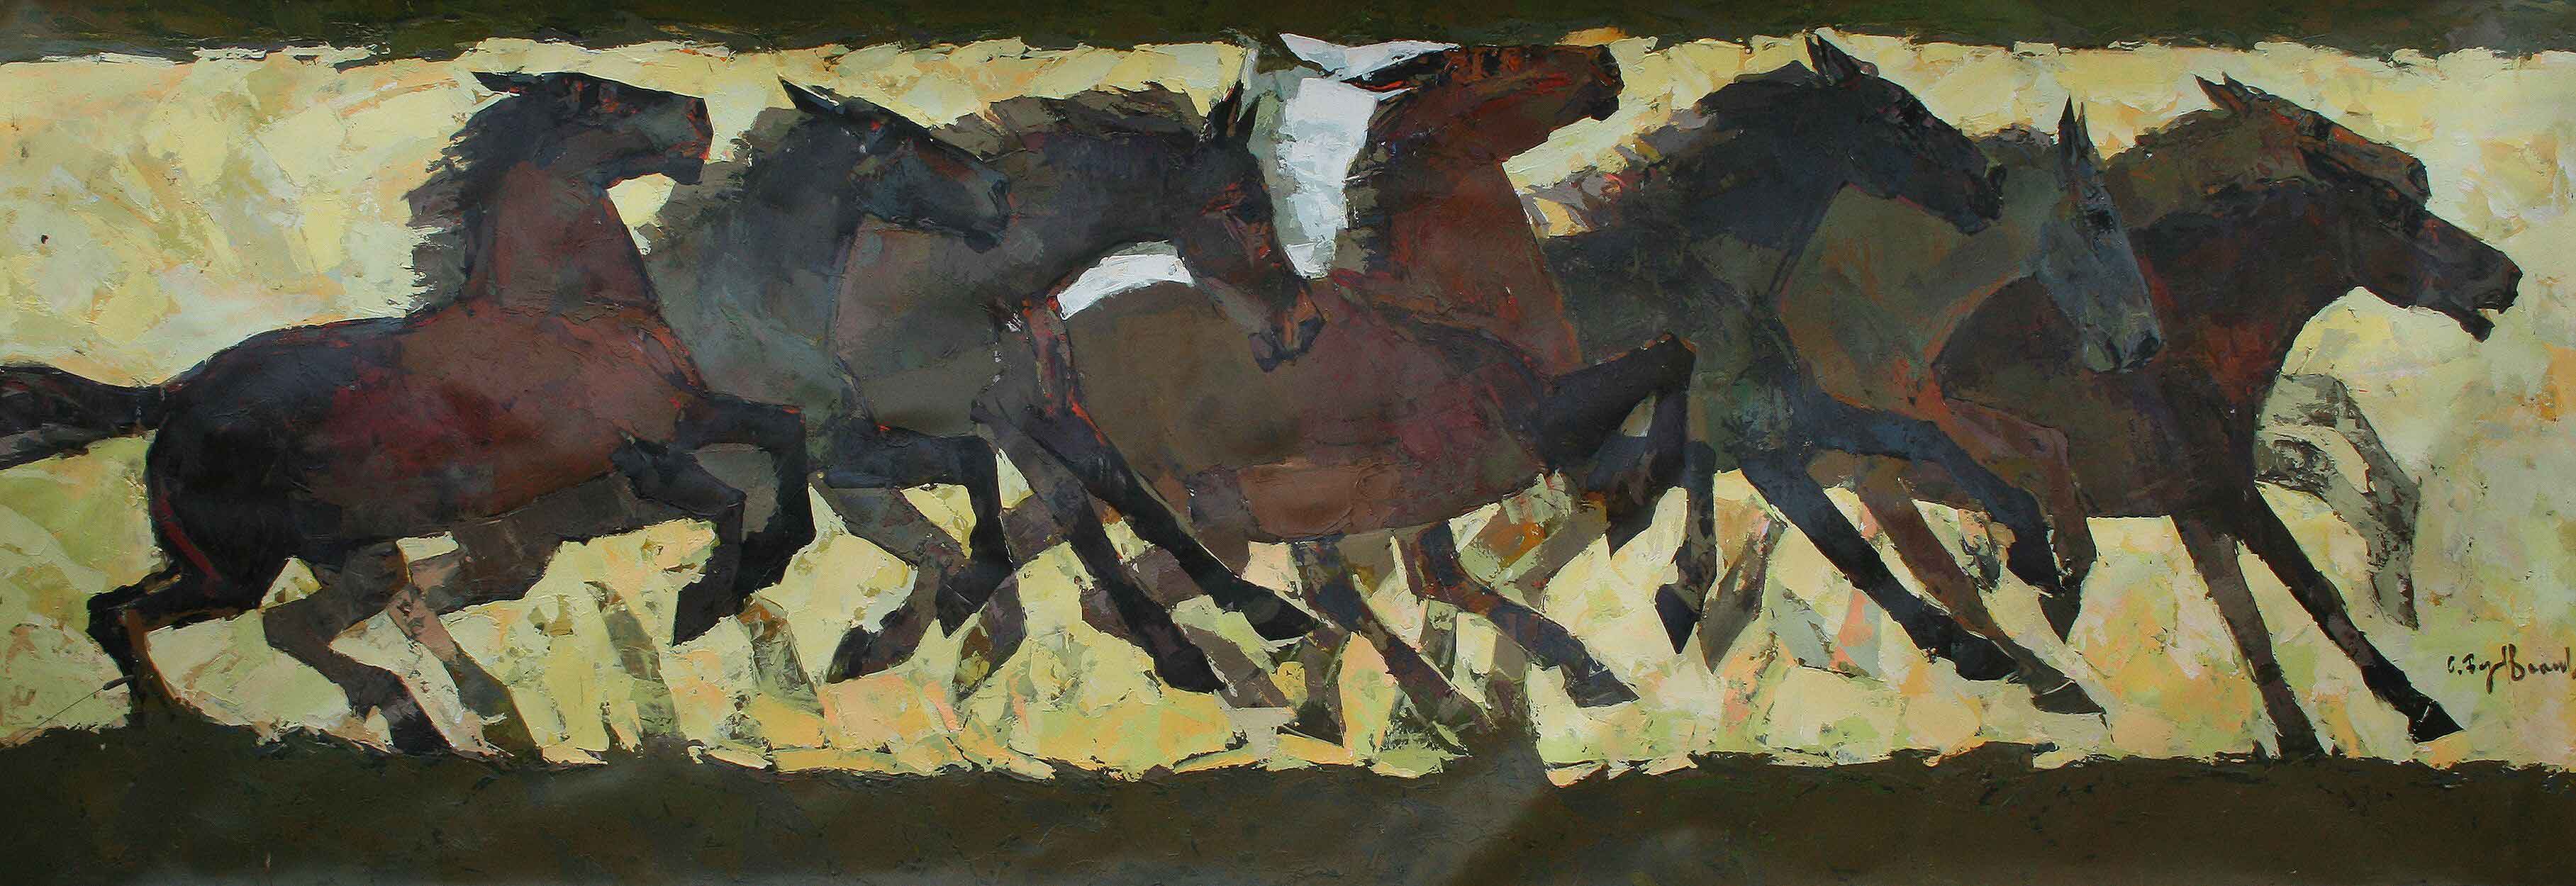 Malerei, die die verschiedenen Positionen eines galoppierenden Pferdes darstellt